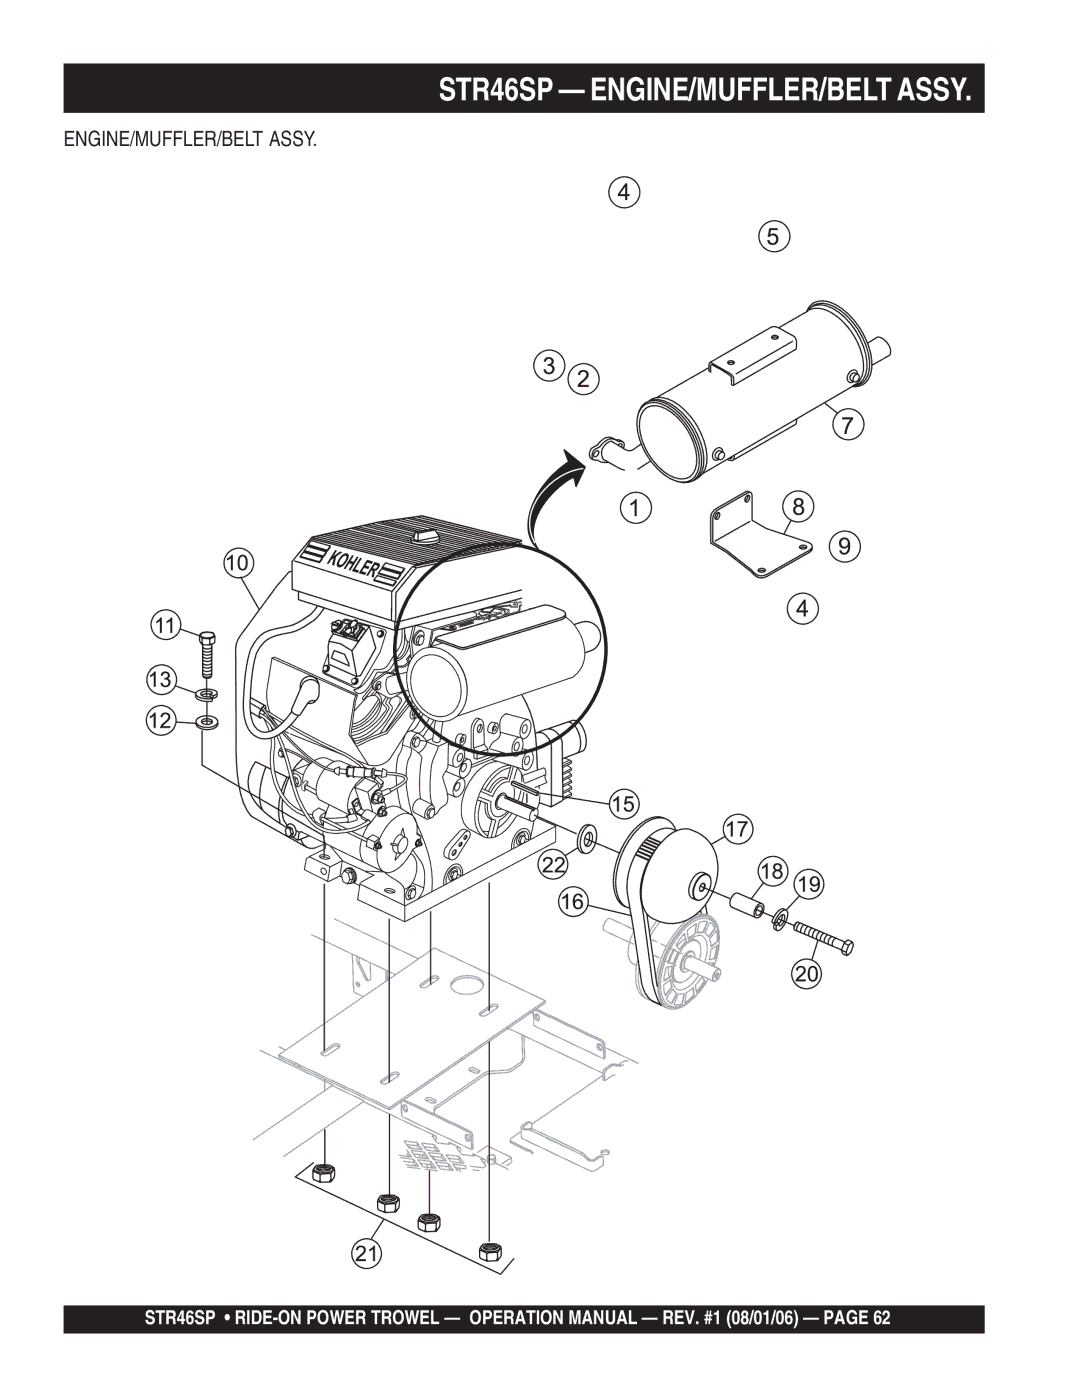 Stow manual STR46SP ENGINE/MUFFLER/BELT Assy 